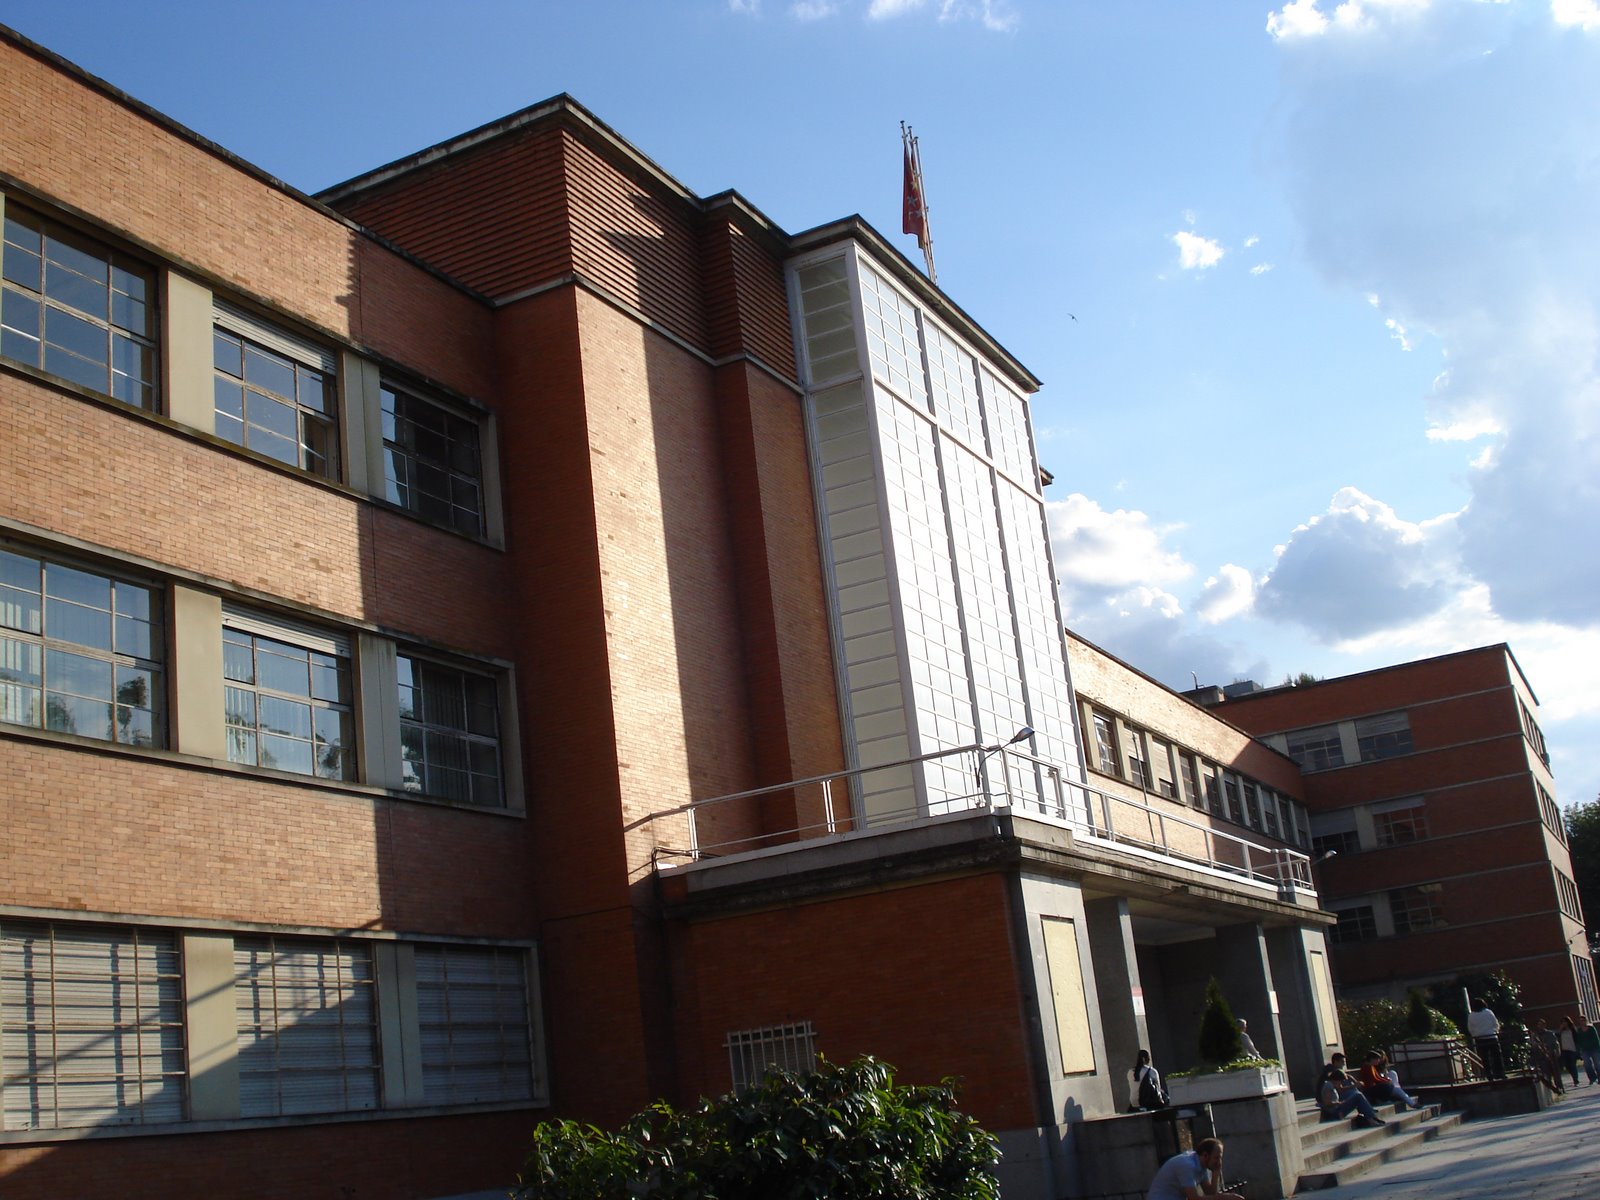 Facultad de Filología: obra arquitectónica destacada del “Art-Decó” más puro en Madrid, construida entre 1932 y 1936 por Agustín Aguirre